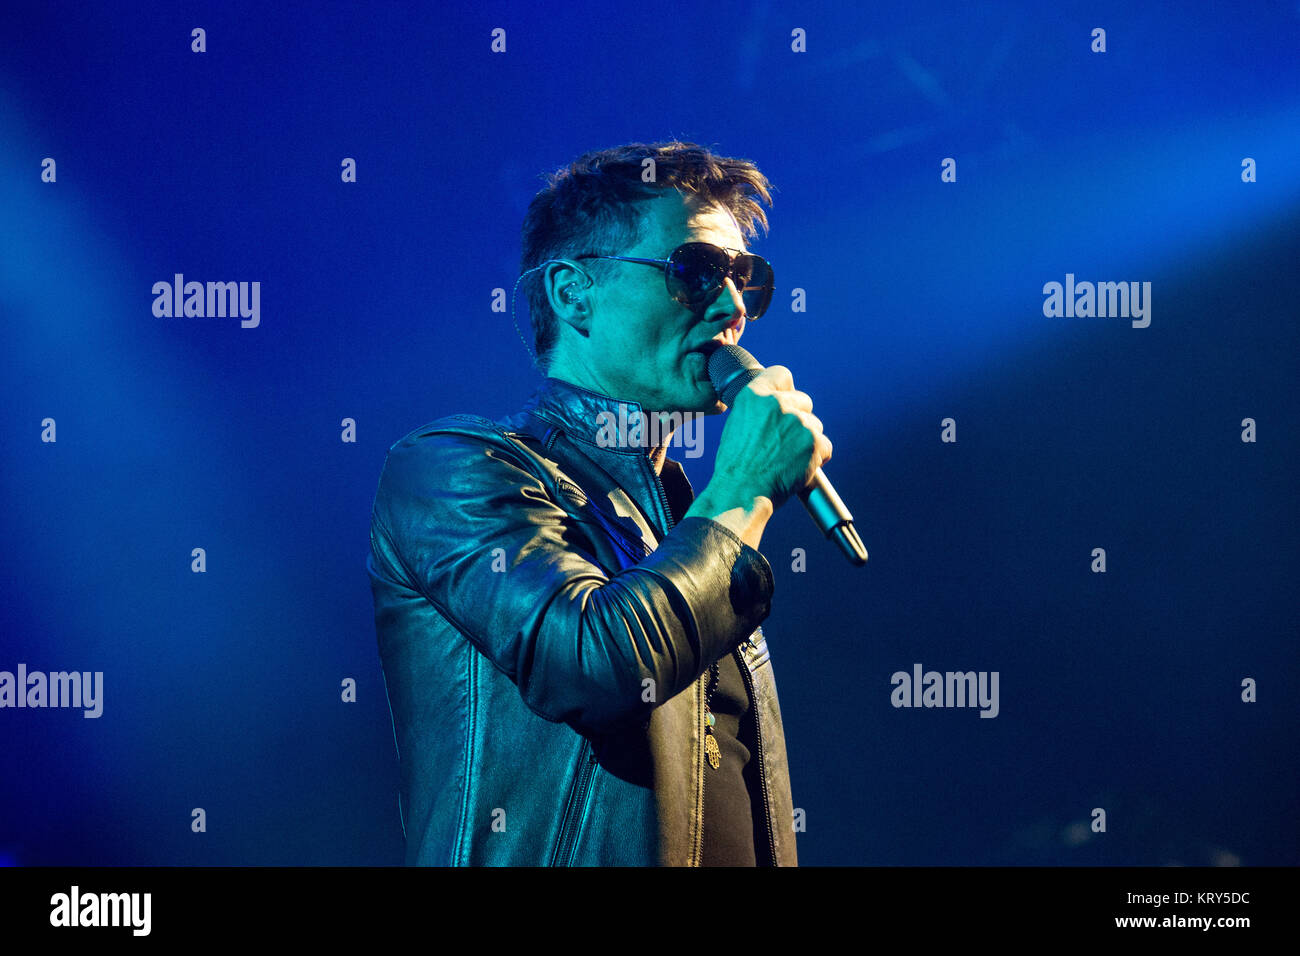 Le groupe pop-rock norvégien A-ha effectue un concert live à Oslo Spektrum  d'Oslo. Ici, chanteuse et compositrice Morten Harket est vu sur scène. La  Norvège, 30/04 2016 Photo Stock - Alamy